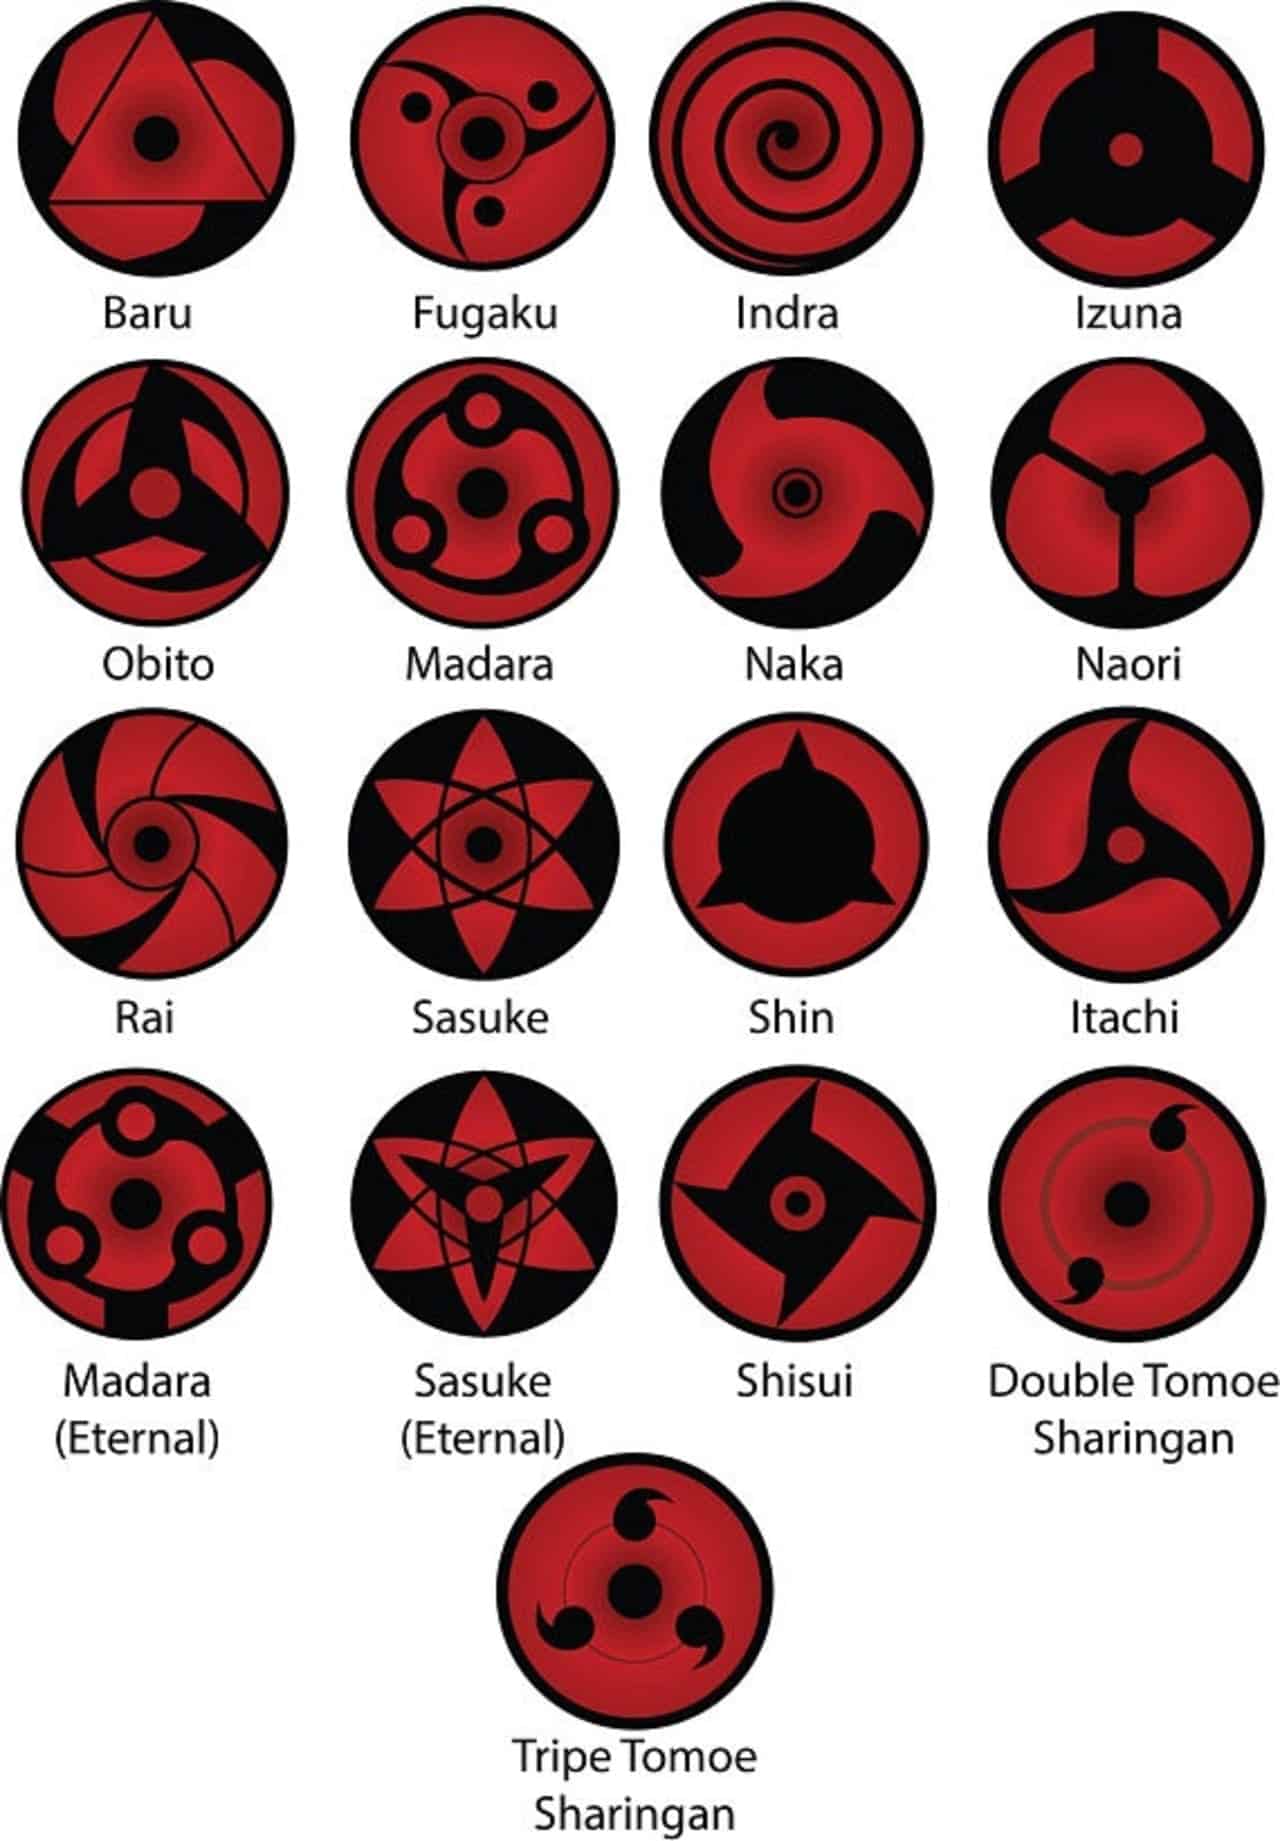 Mắt Sharingan: Với khả năng xuyên thấu tâm trí và những kỹ năng chiến đấu độc đáo, Mắt Sharingan là một trong những yếu tố quan trọng nhất trong thế giới Naruto. Nhấn vào hình ảnh liên quan để khám phá thêm về sức mạnh nổi bật của Mắt Sharingan.